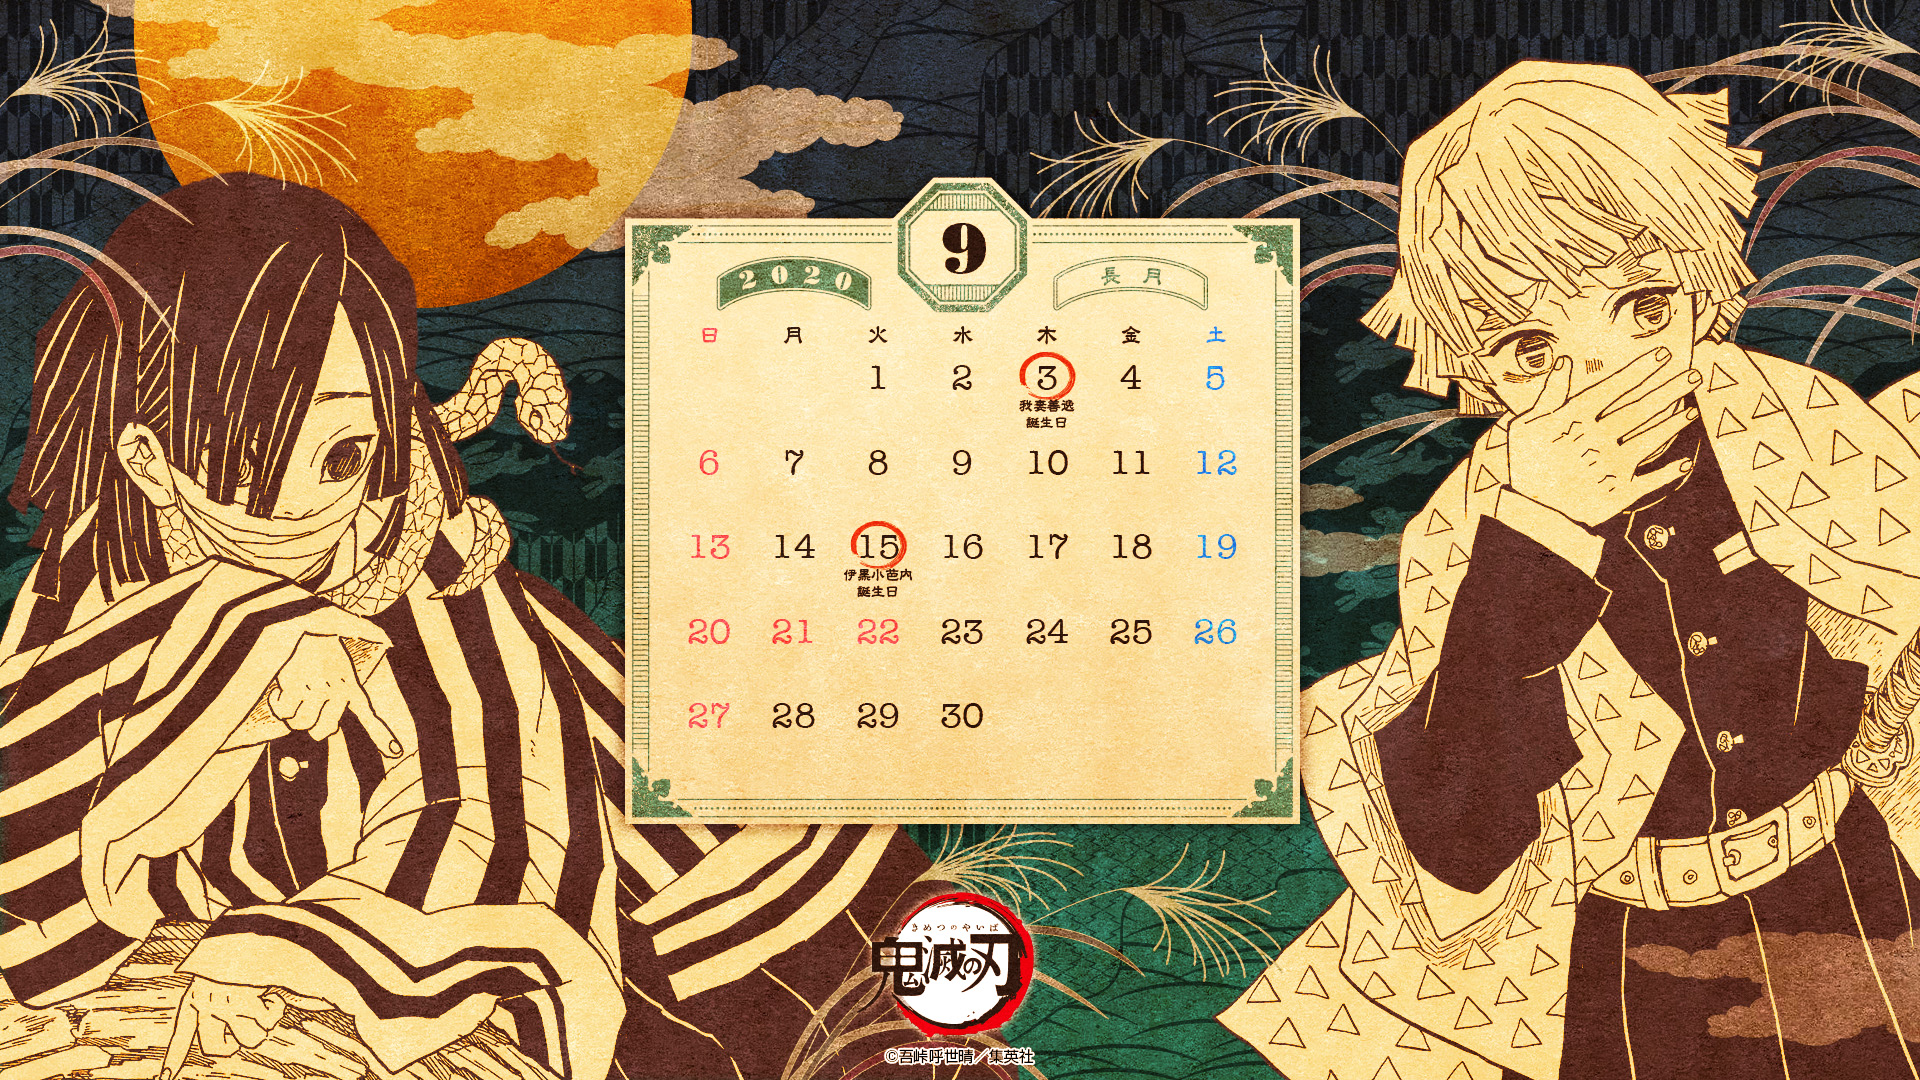 誕生日を控えた伊黒と善逸がデザイン 鬼滅の刃 のカレンダー壁紙9月分が配布スタート Game Watch